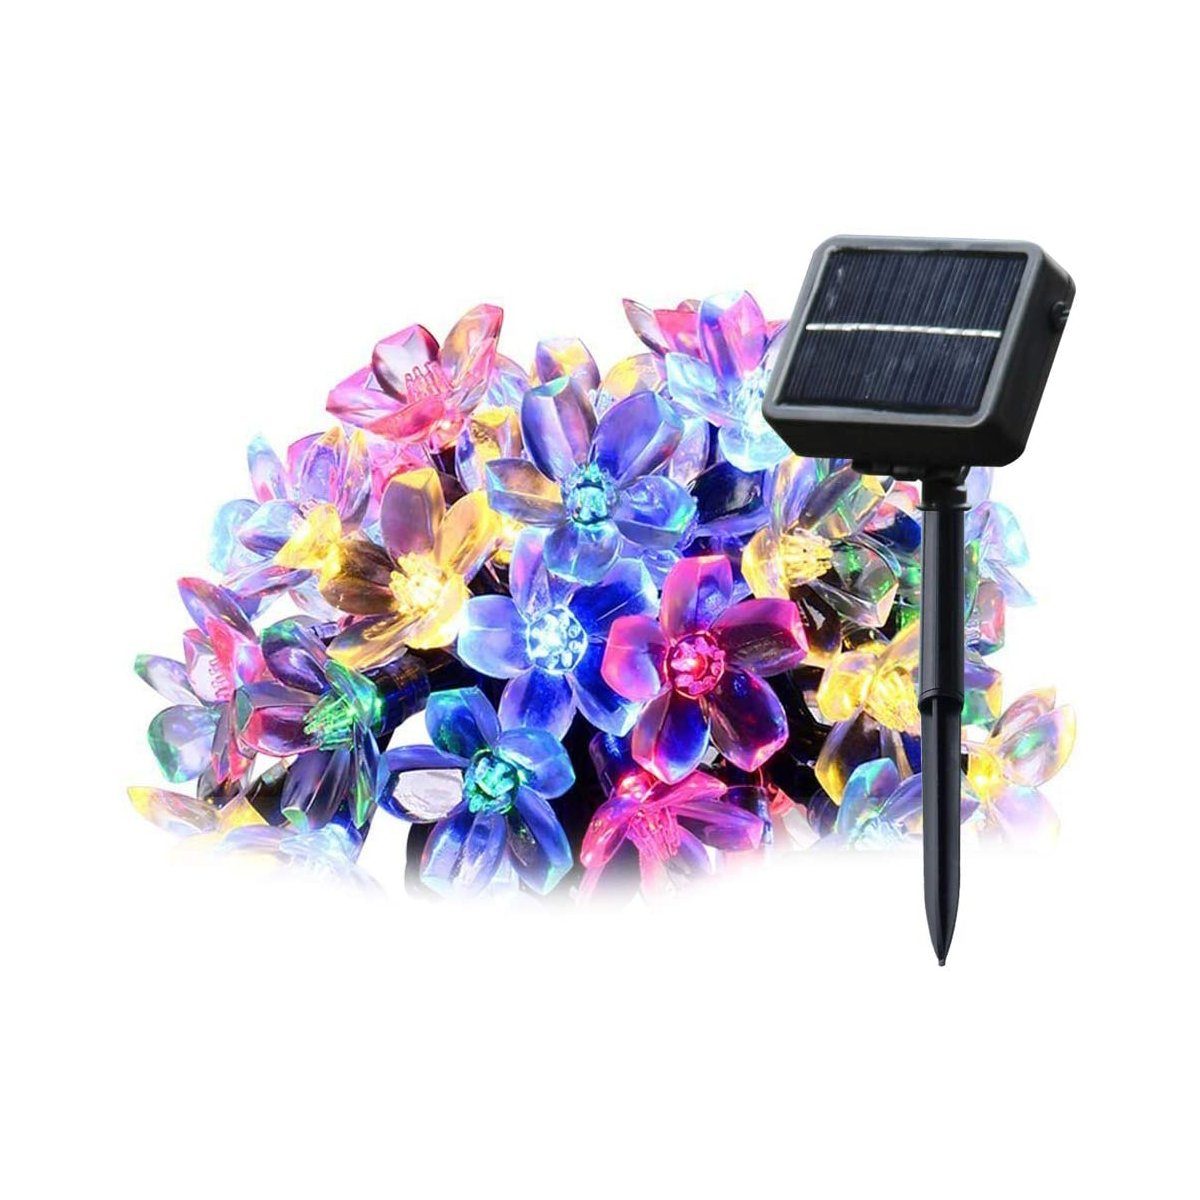 Salcar LED 20 mit Solarleuchte Bunt 5m Kirschblüten Garten Solar-Lichterkette